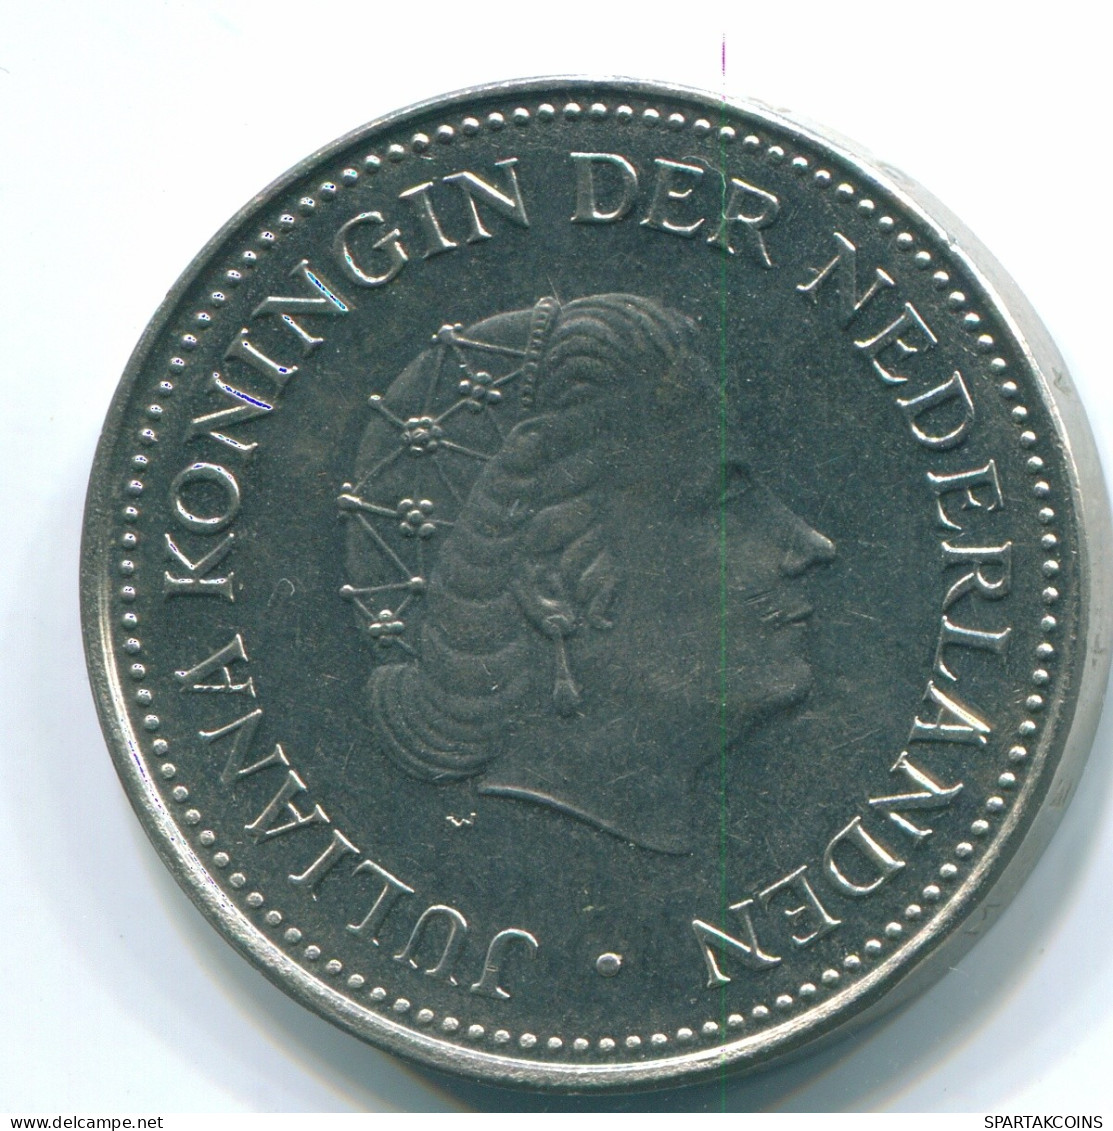 1 GULDEN 1971 NIEDERLÄNDISCHE ANTILLEN Nickel Koloniale Münze #S11977.D.A - Antille Olandesi